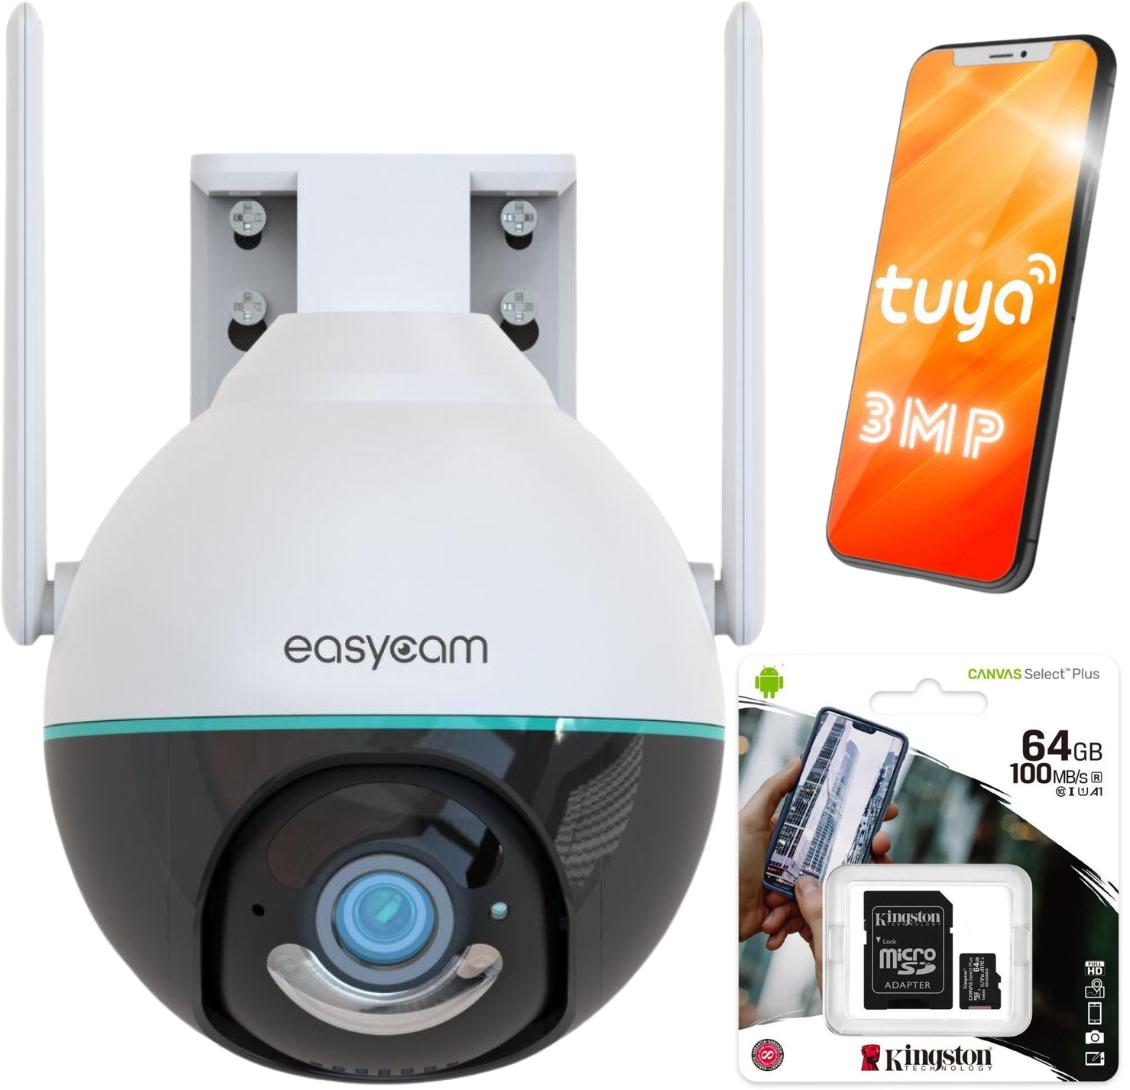 Kamera IP EasyCam obrotowa zewnętrzna WiFi Tuya 3MP EC-3PT4 najważniejsze cechy: